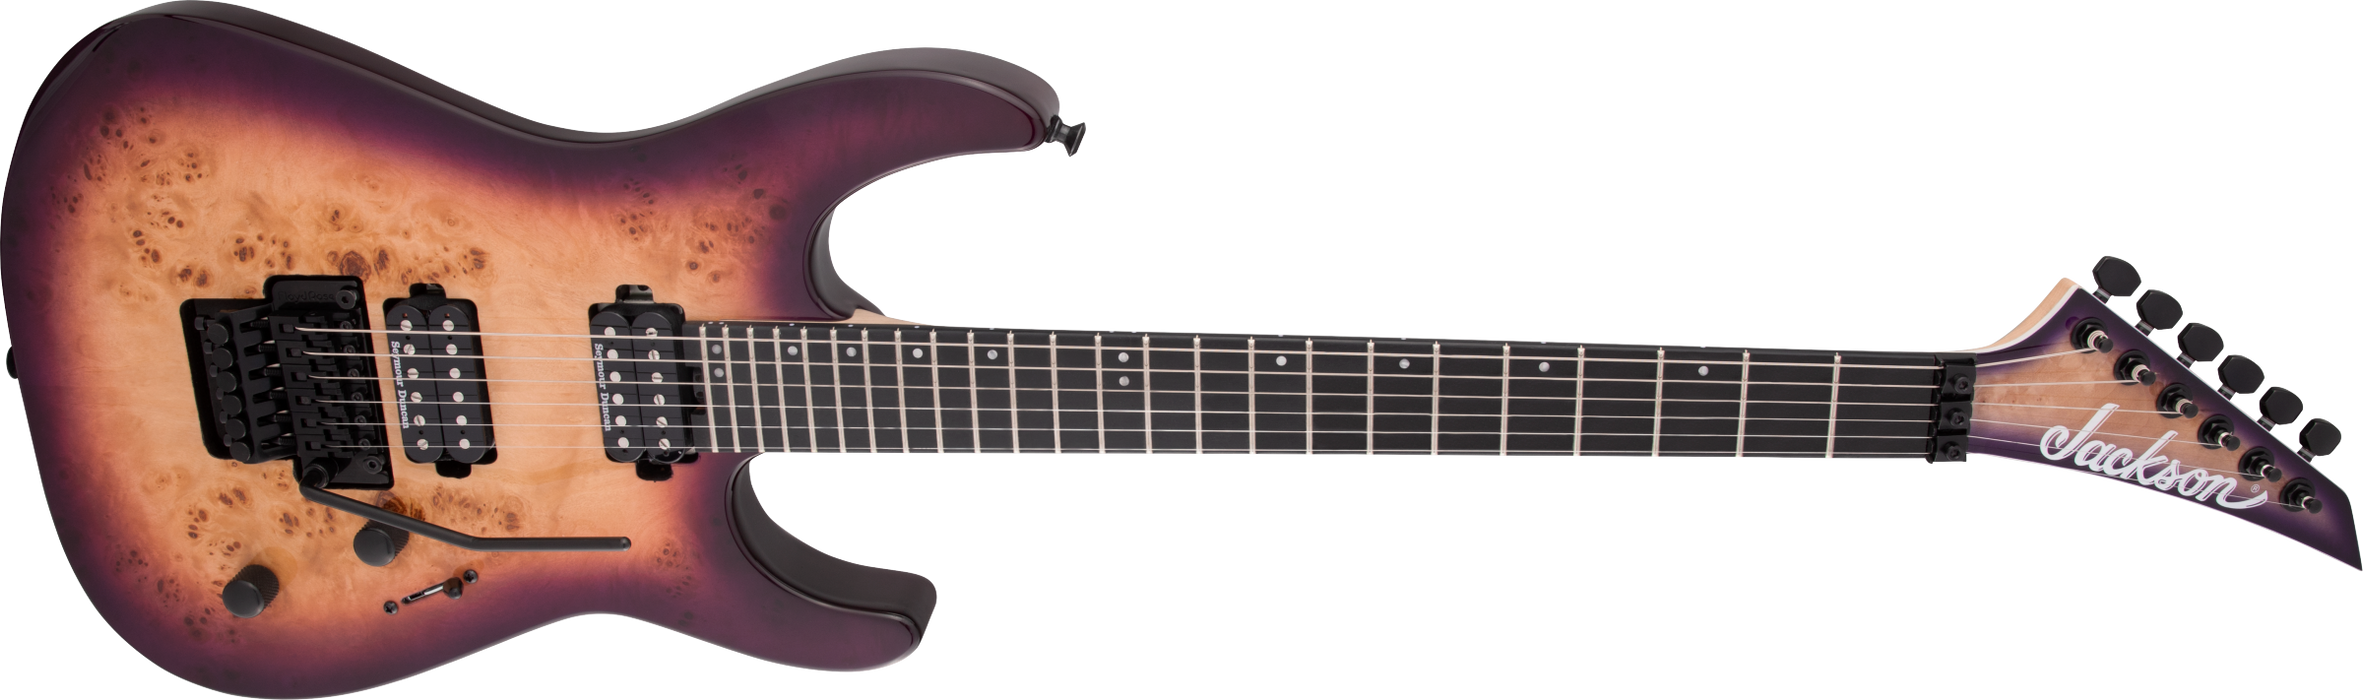 Jackson Pro Series Dinky DK2P Ebony Fingerboard Purple Sunset